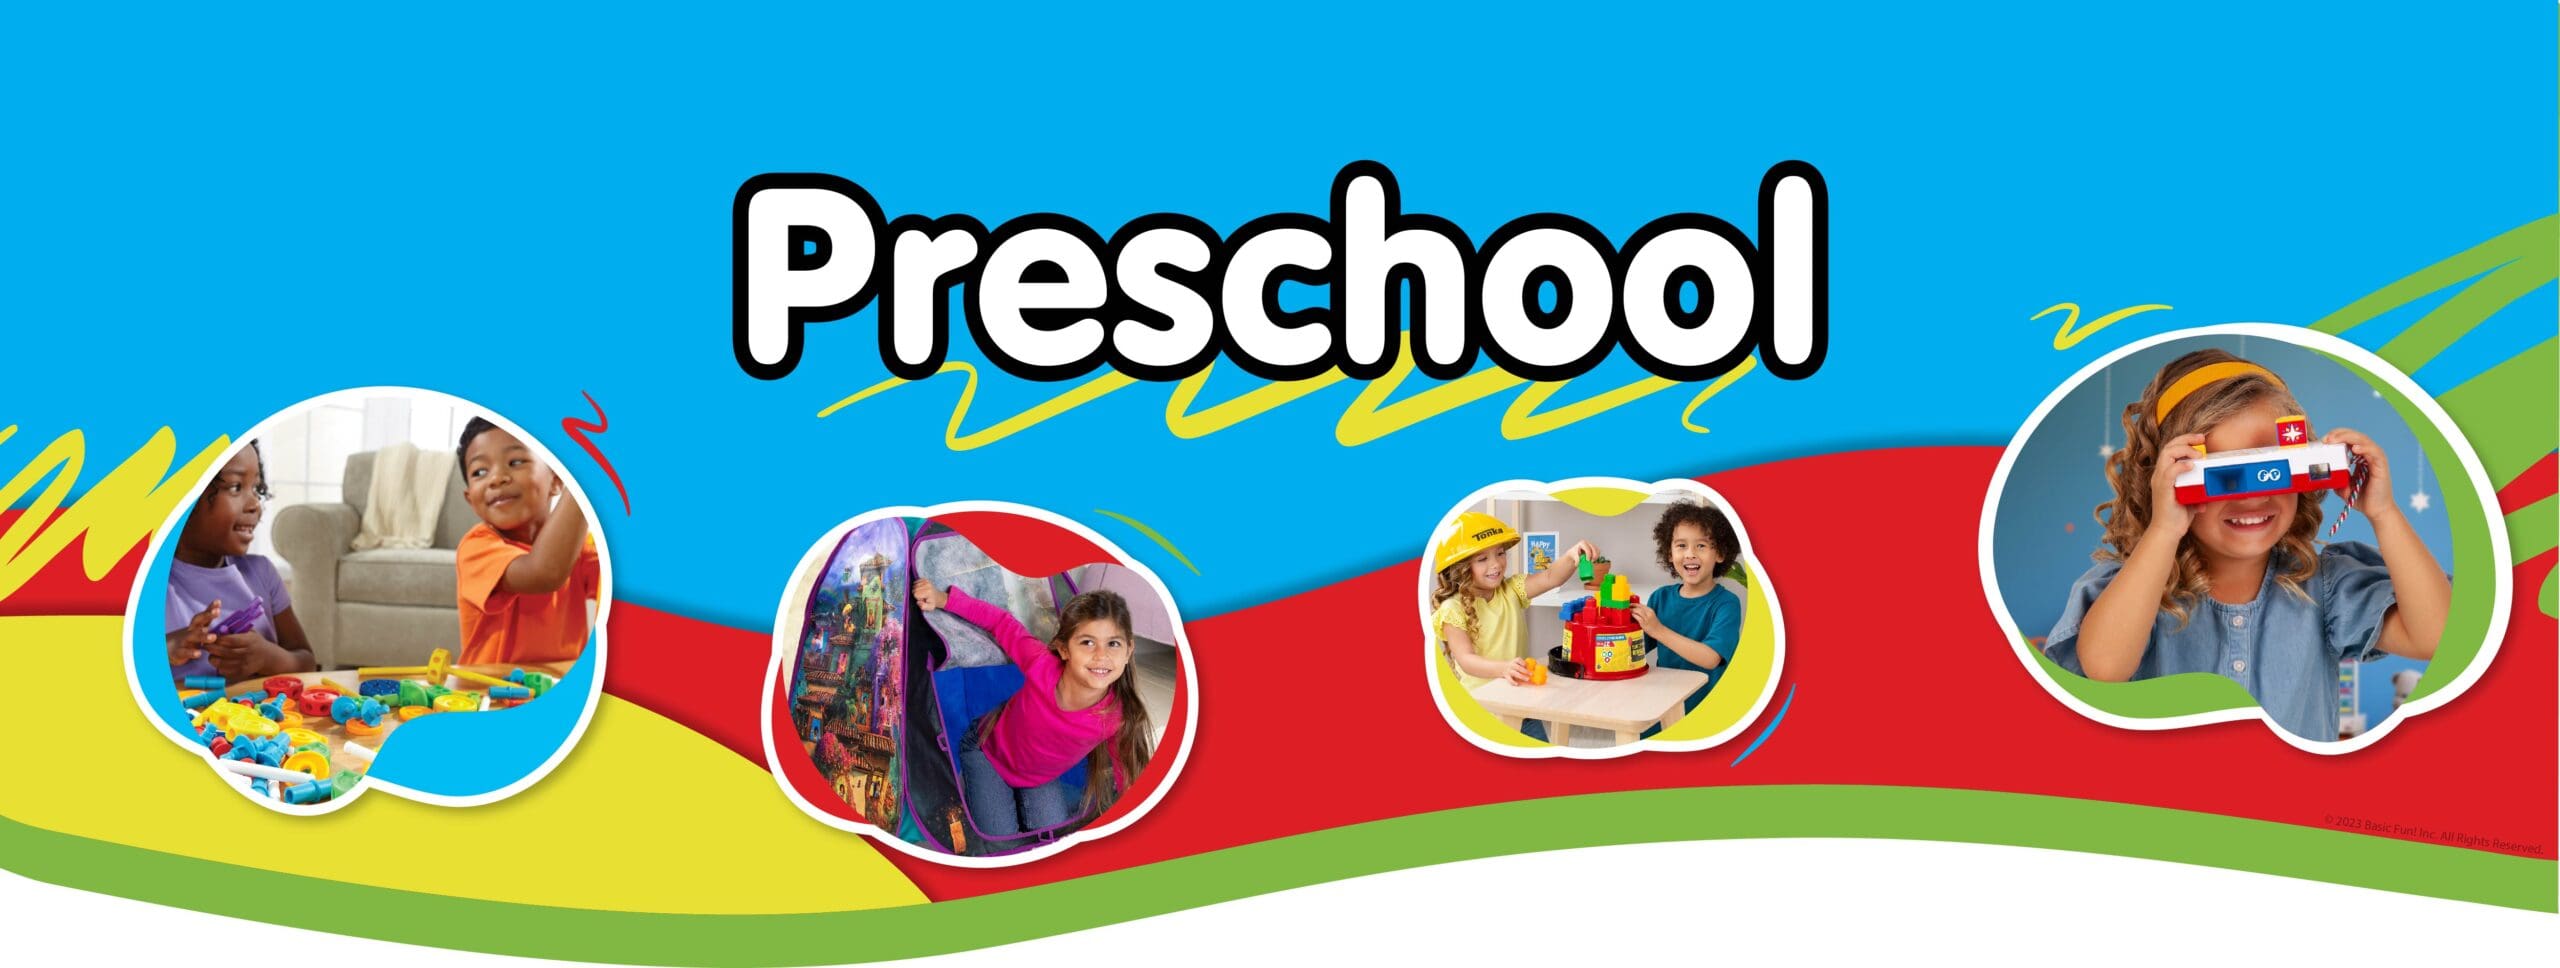 Preschool banner